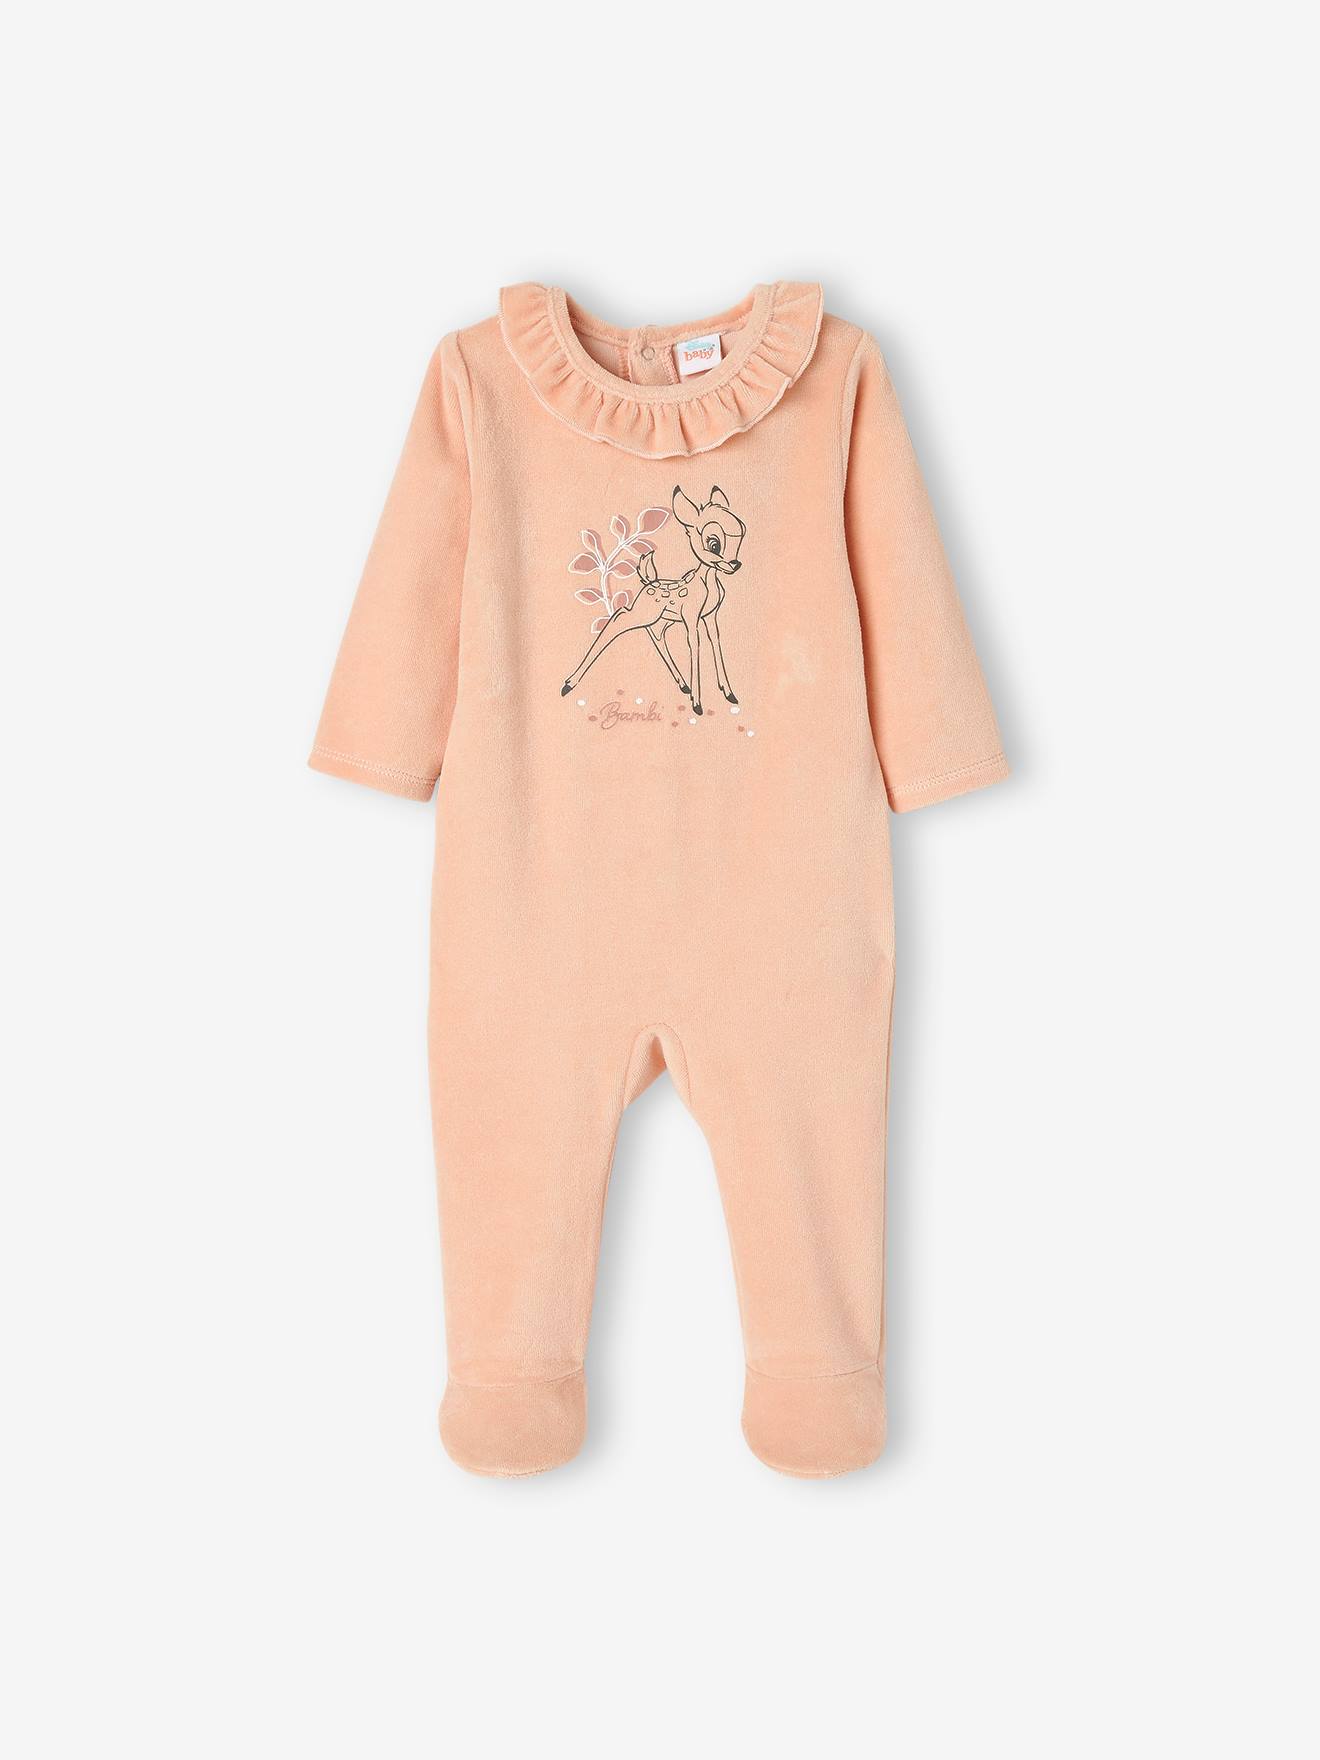 Dors-bien bébé fille Disney® Bambi en velours rose clair uni avec decor